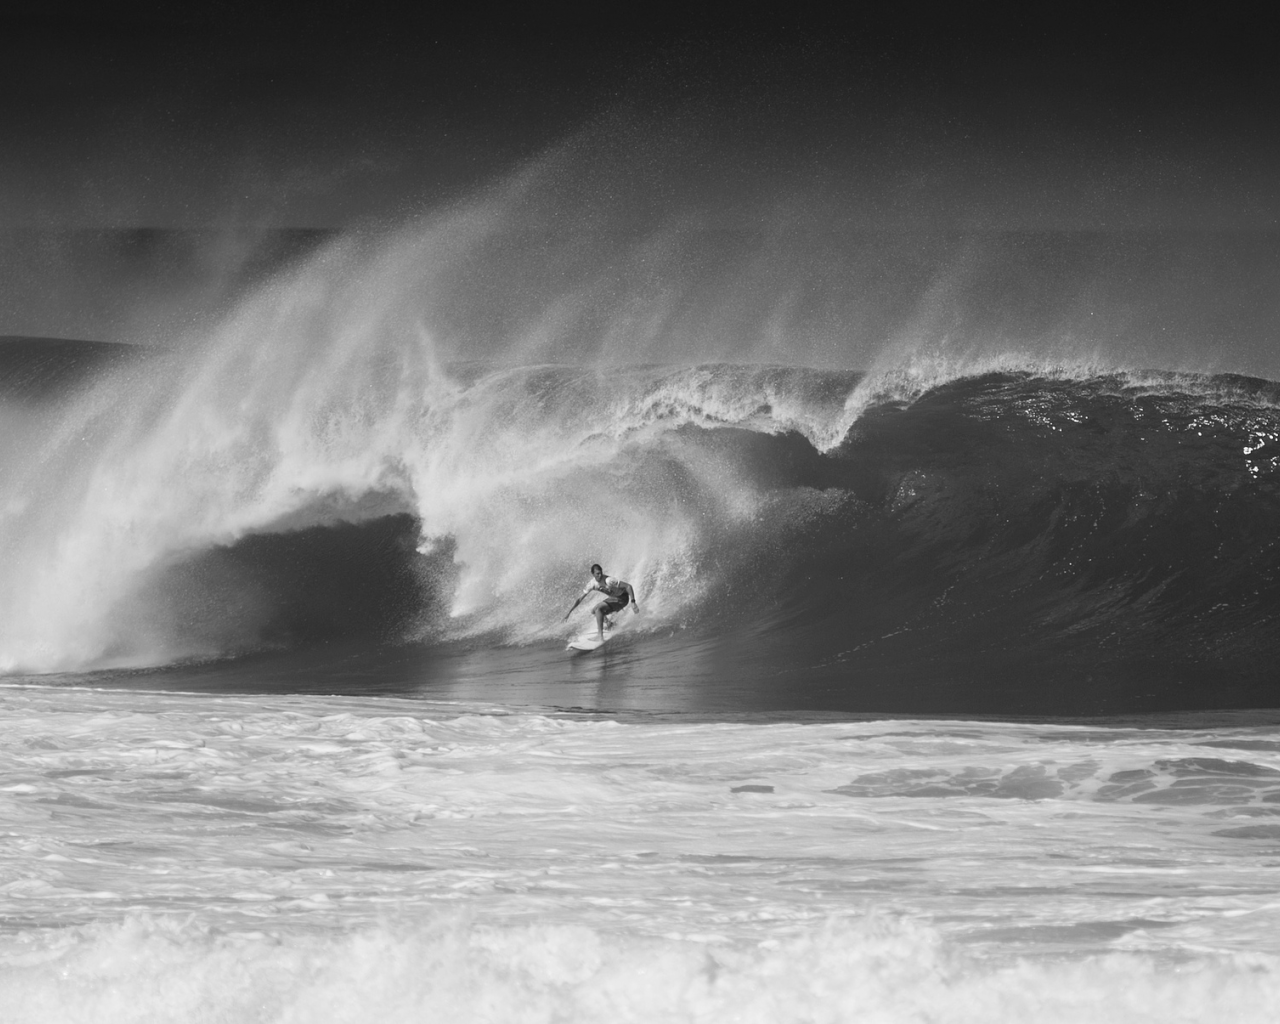 cерфигист, oahu, волна, hawaii, north shore, черно-белое фото, океан